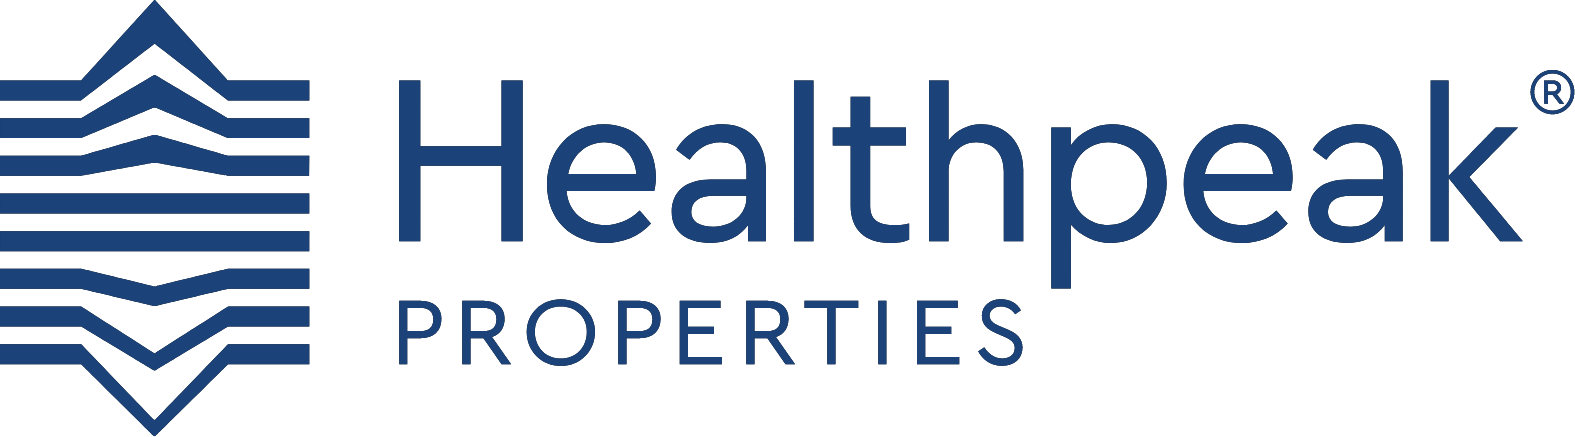 Healthpeak properties Logo in a navy blue color